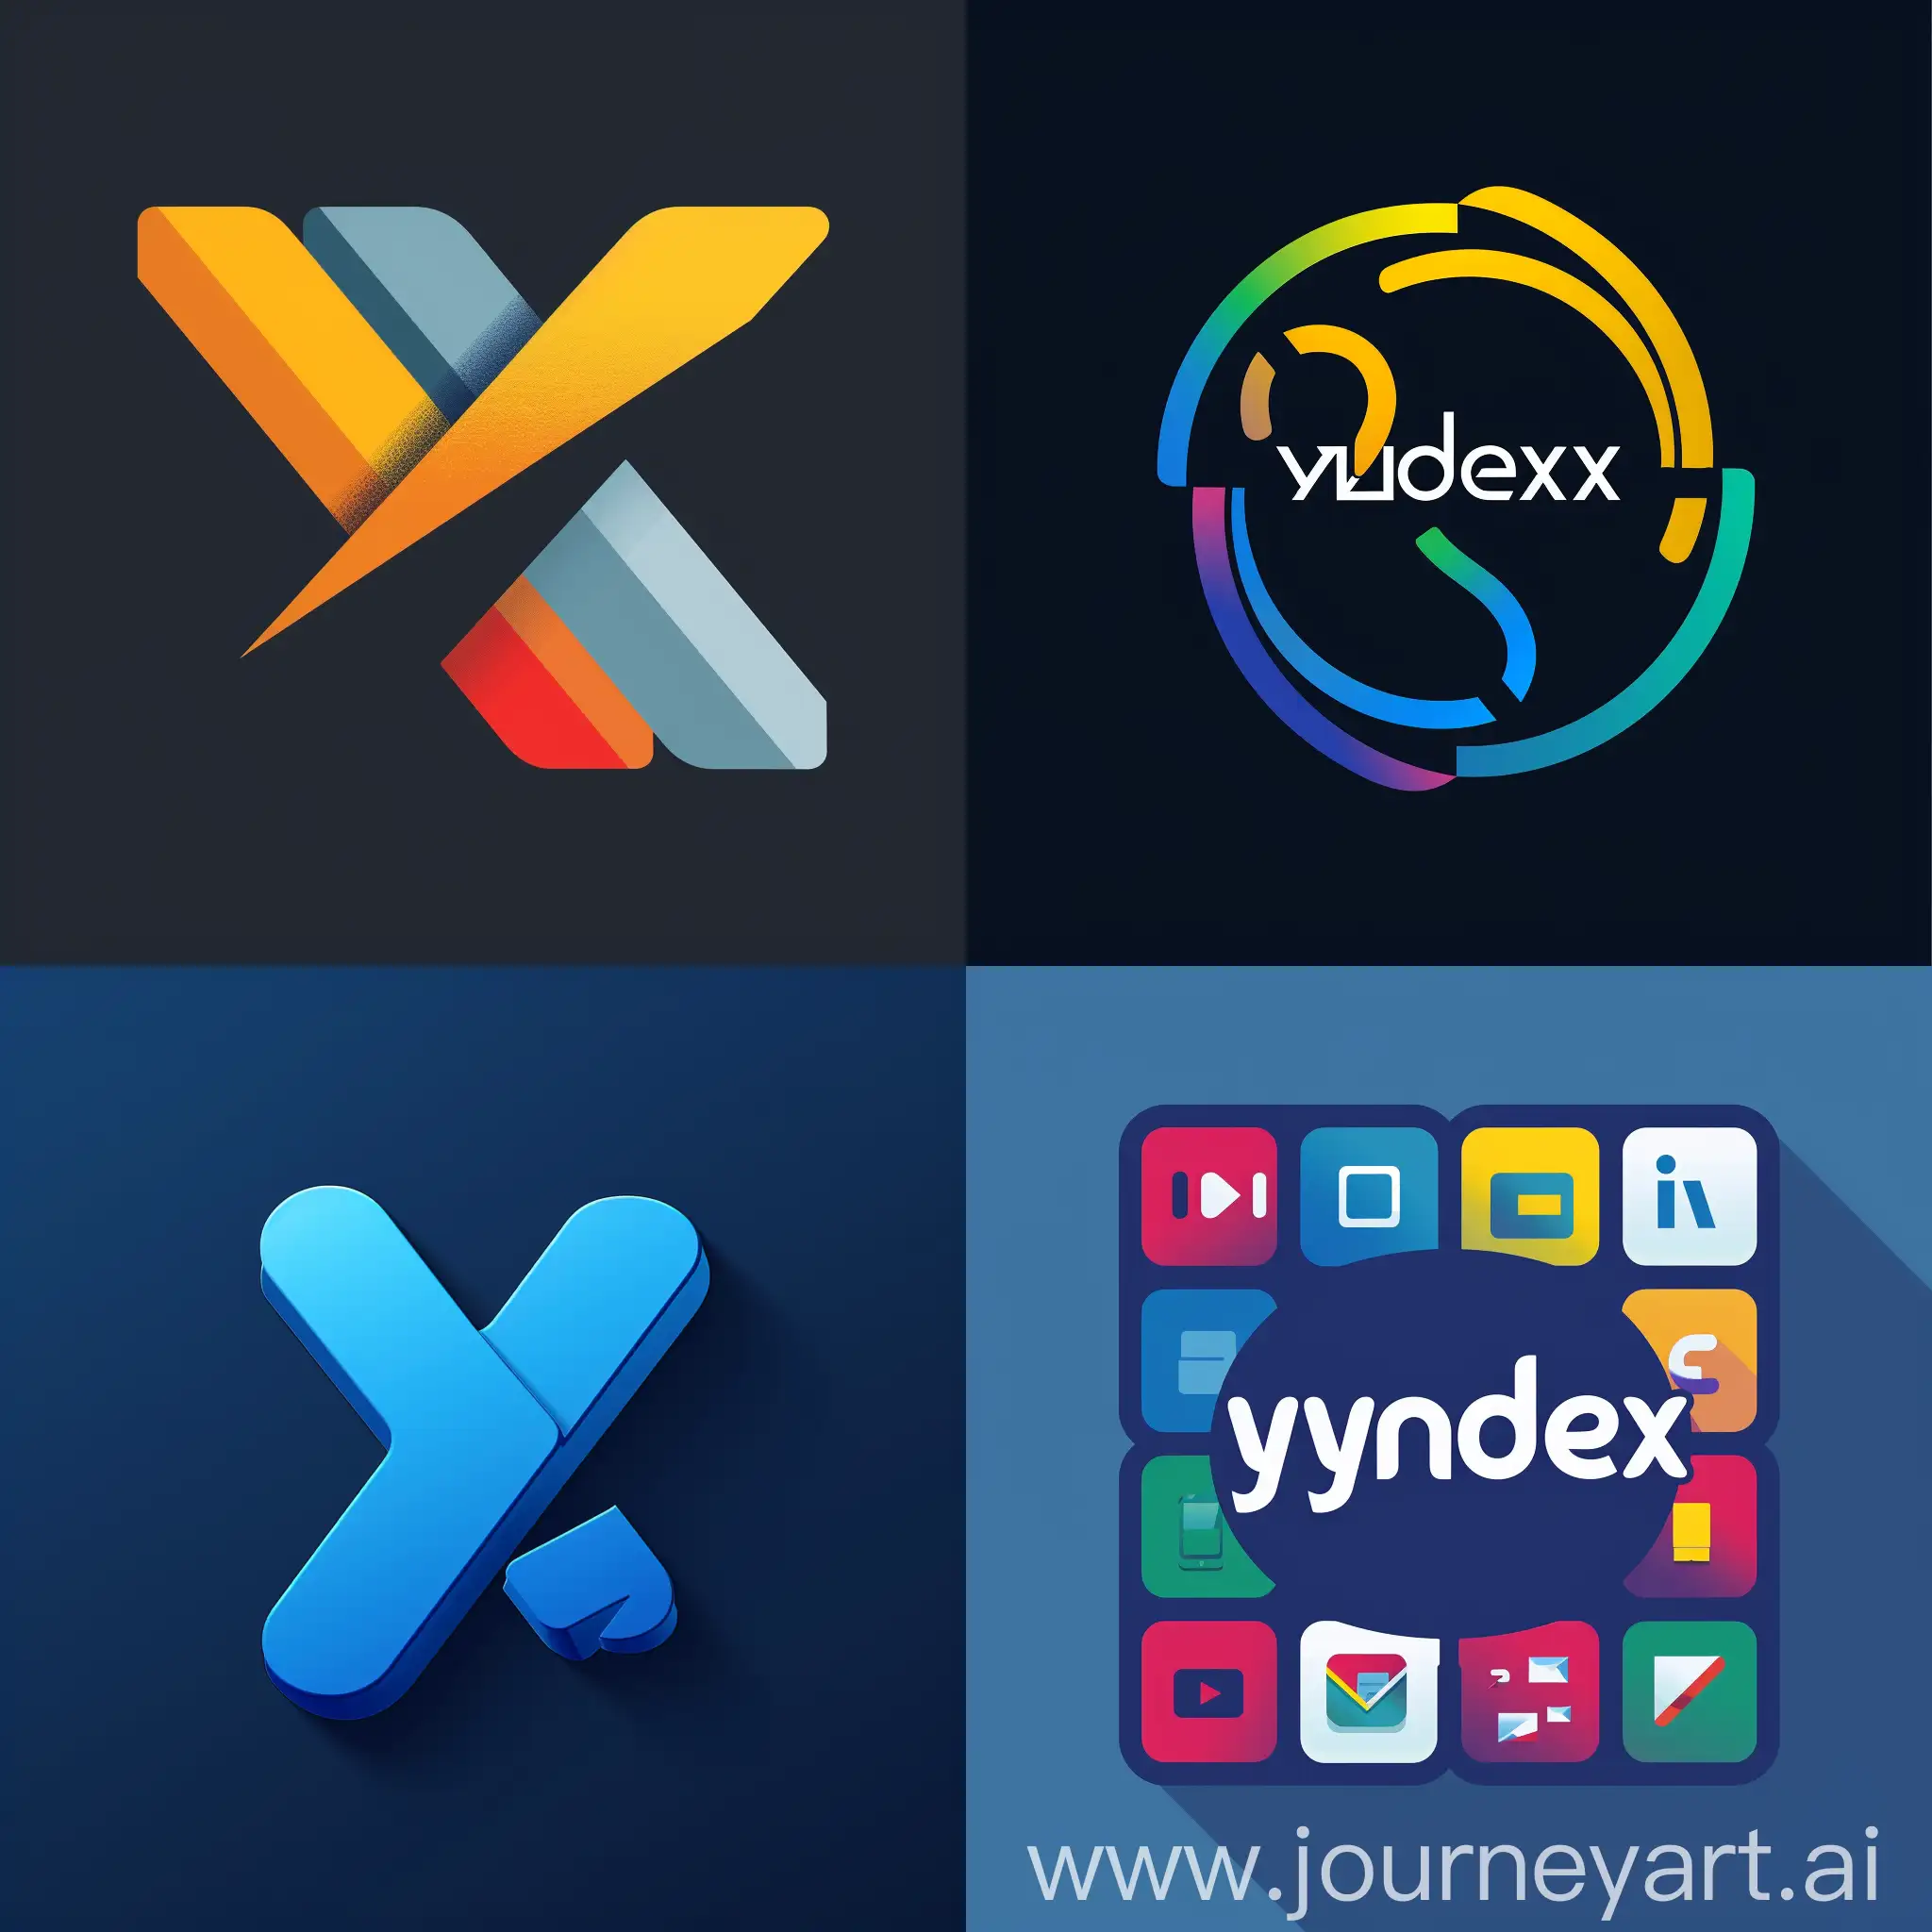 Создай логотип для яндекс, который отражает многофункциональность данного сервиса